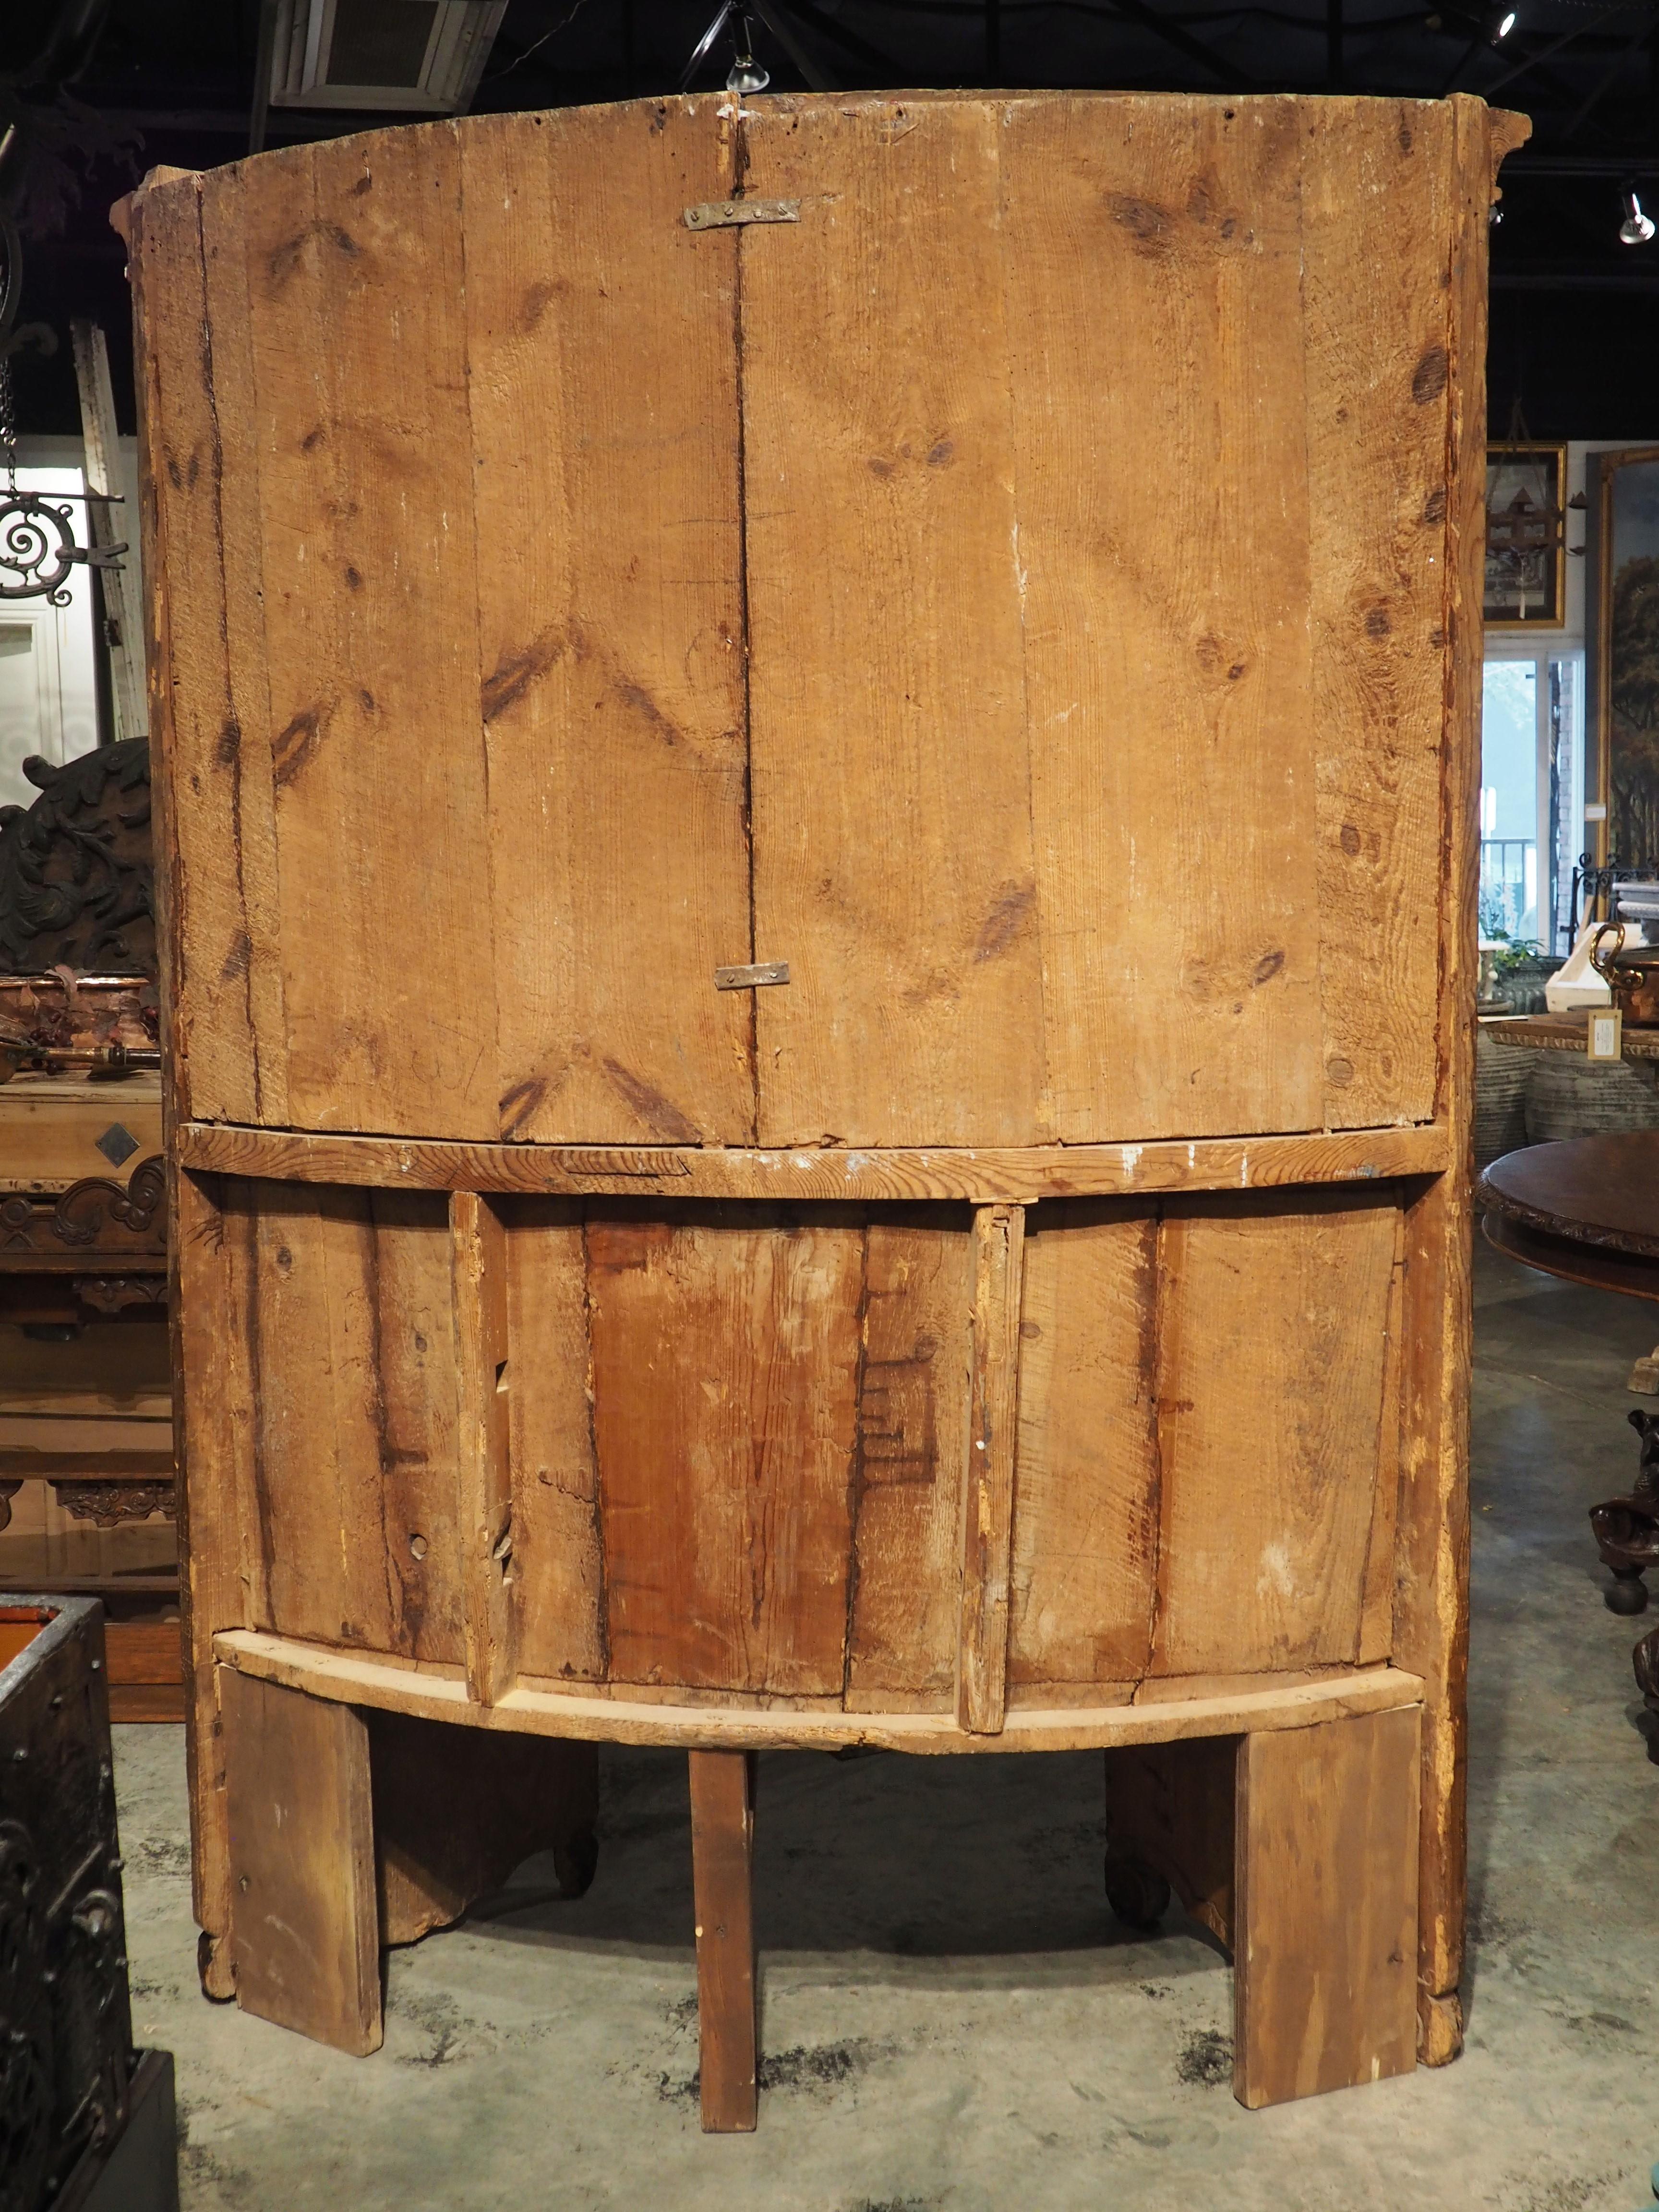 Ein einzigartiger Chorstuhl mit gebogener Rückenlehne, handgeschnitzt in Norditalien aus Lärchenholz. Die Lärche ist ein recht dauerhaftes Nadelholz, das in den italienischen Alpen, insbesondere in den Dolomiten, weit verbreitet ist. Es ist durchaus